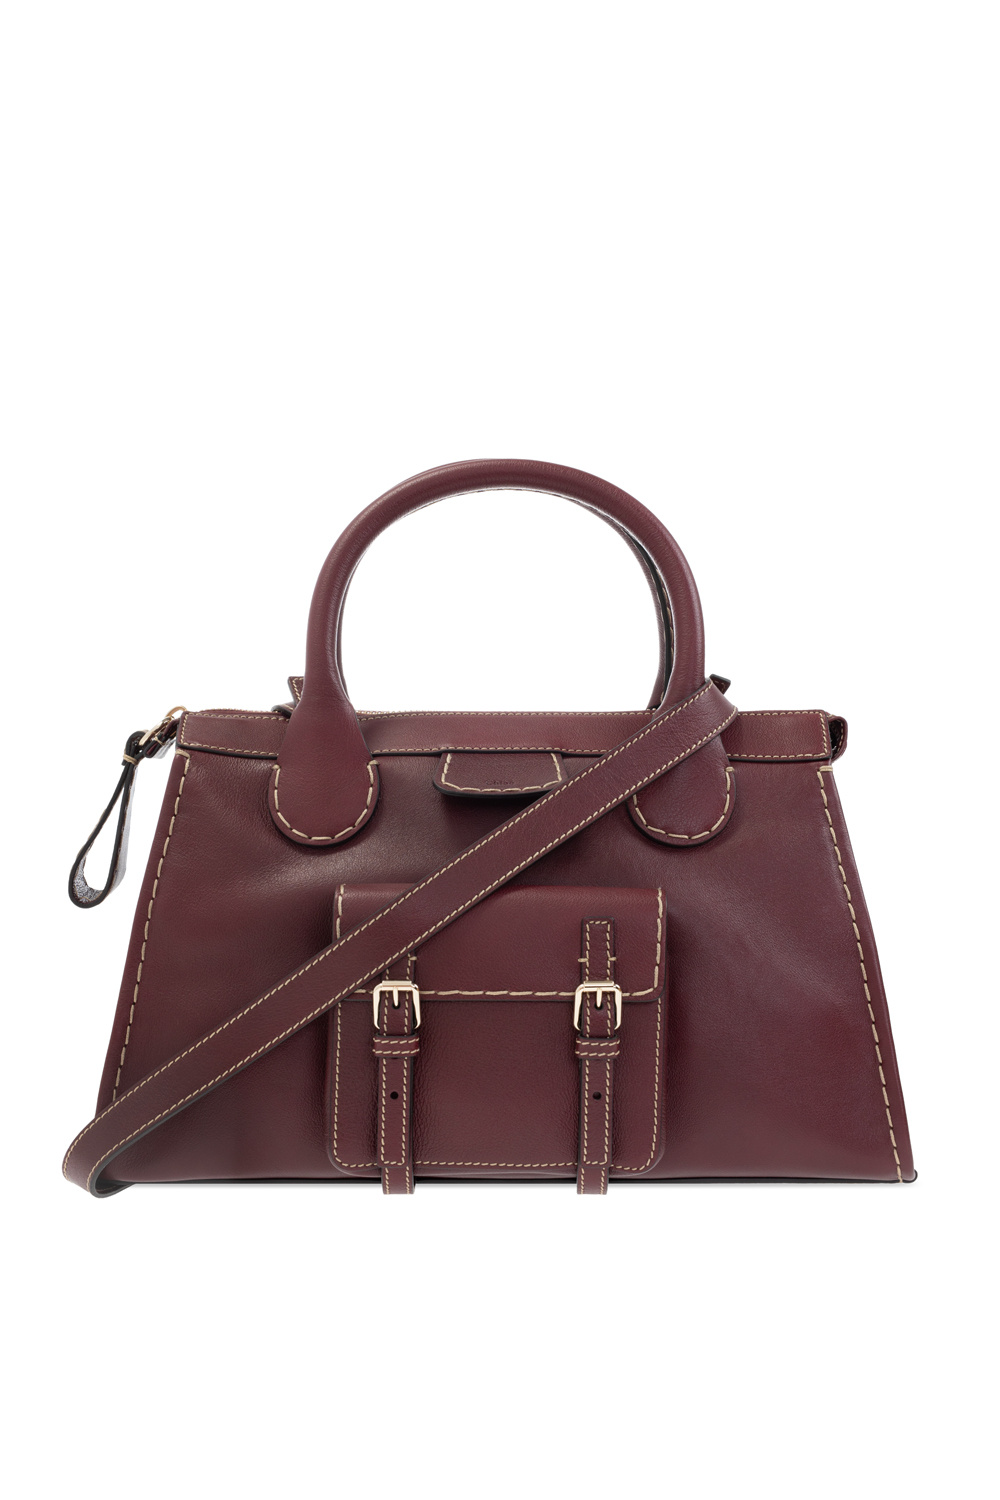 Chloé 'Edith Medium' shoulder bag | Women's Bags | IetpShops